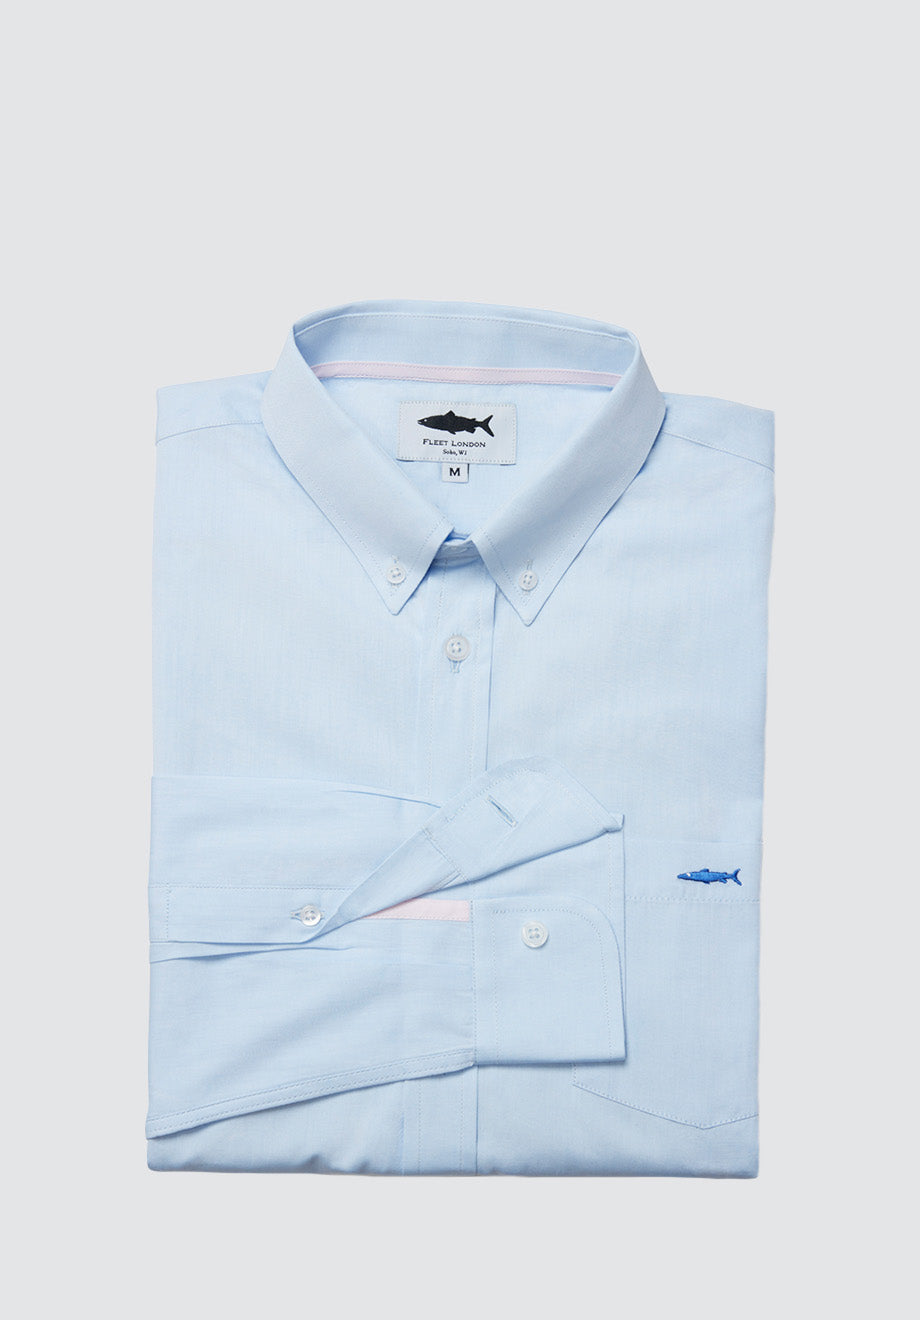 Periwinkle Blue Cotton Shirt for Men